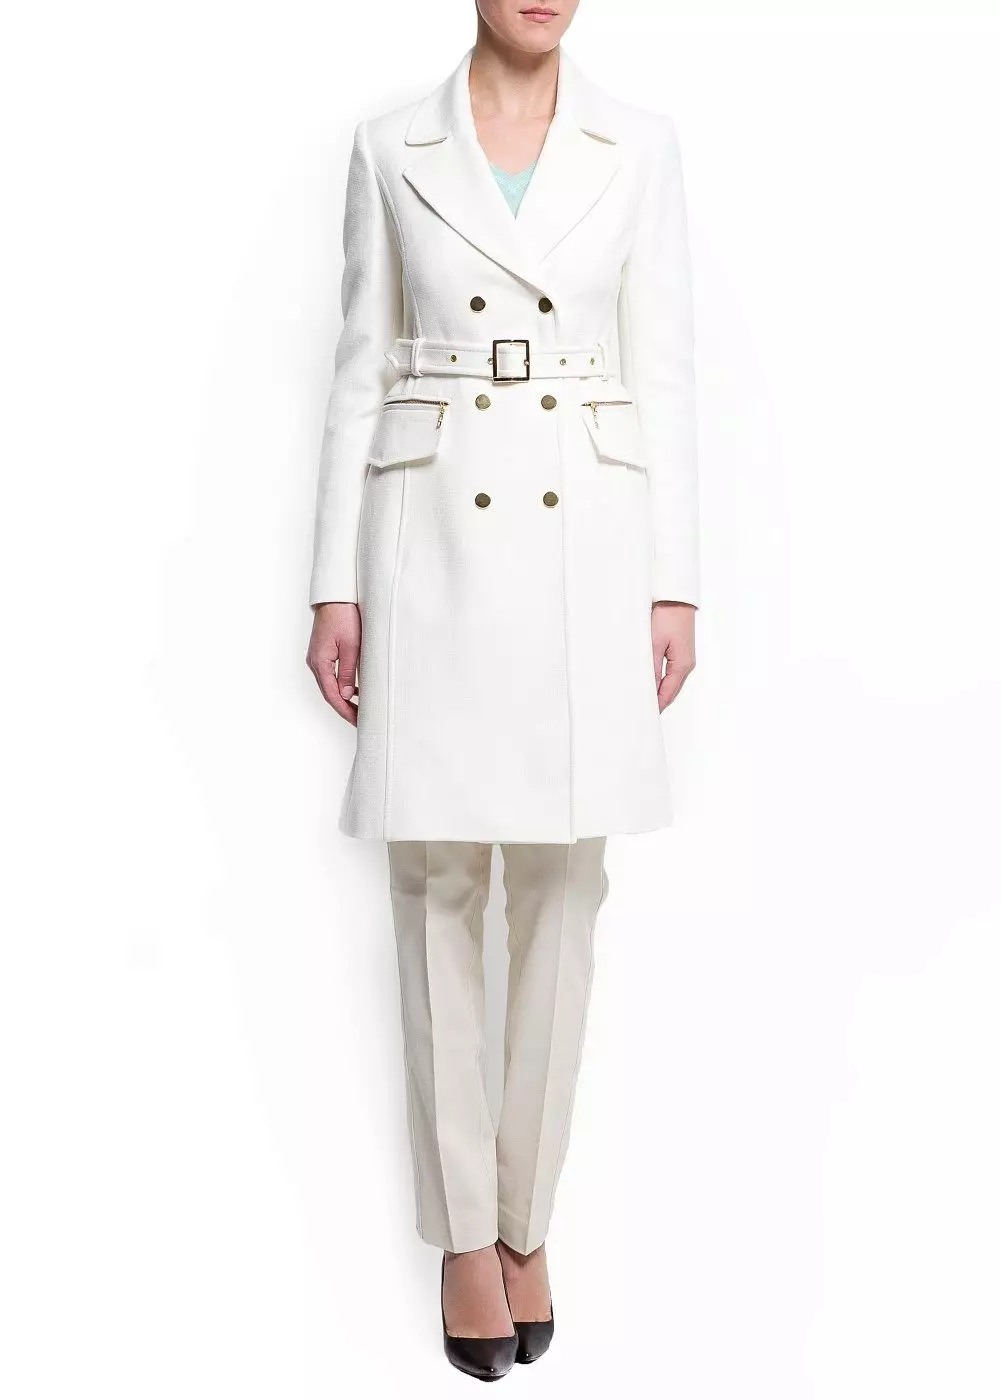 Naisten White Coat (183 kuvaa): Lyhyt, Mango, Valko-Venäjä, kuinka puhdistaa takki, pitkä, huivi valkoinen takki, hupullinen 583_129